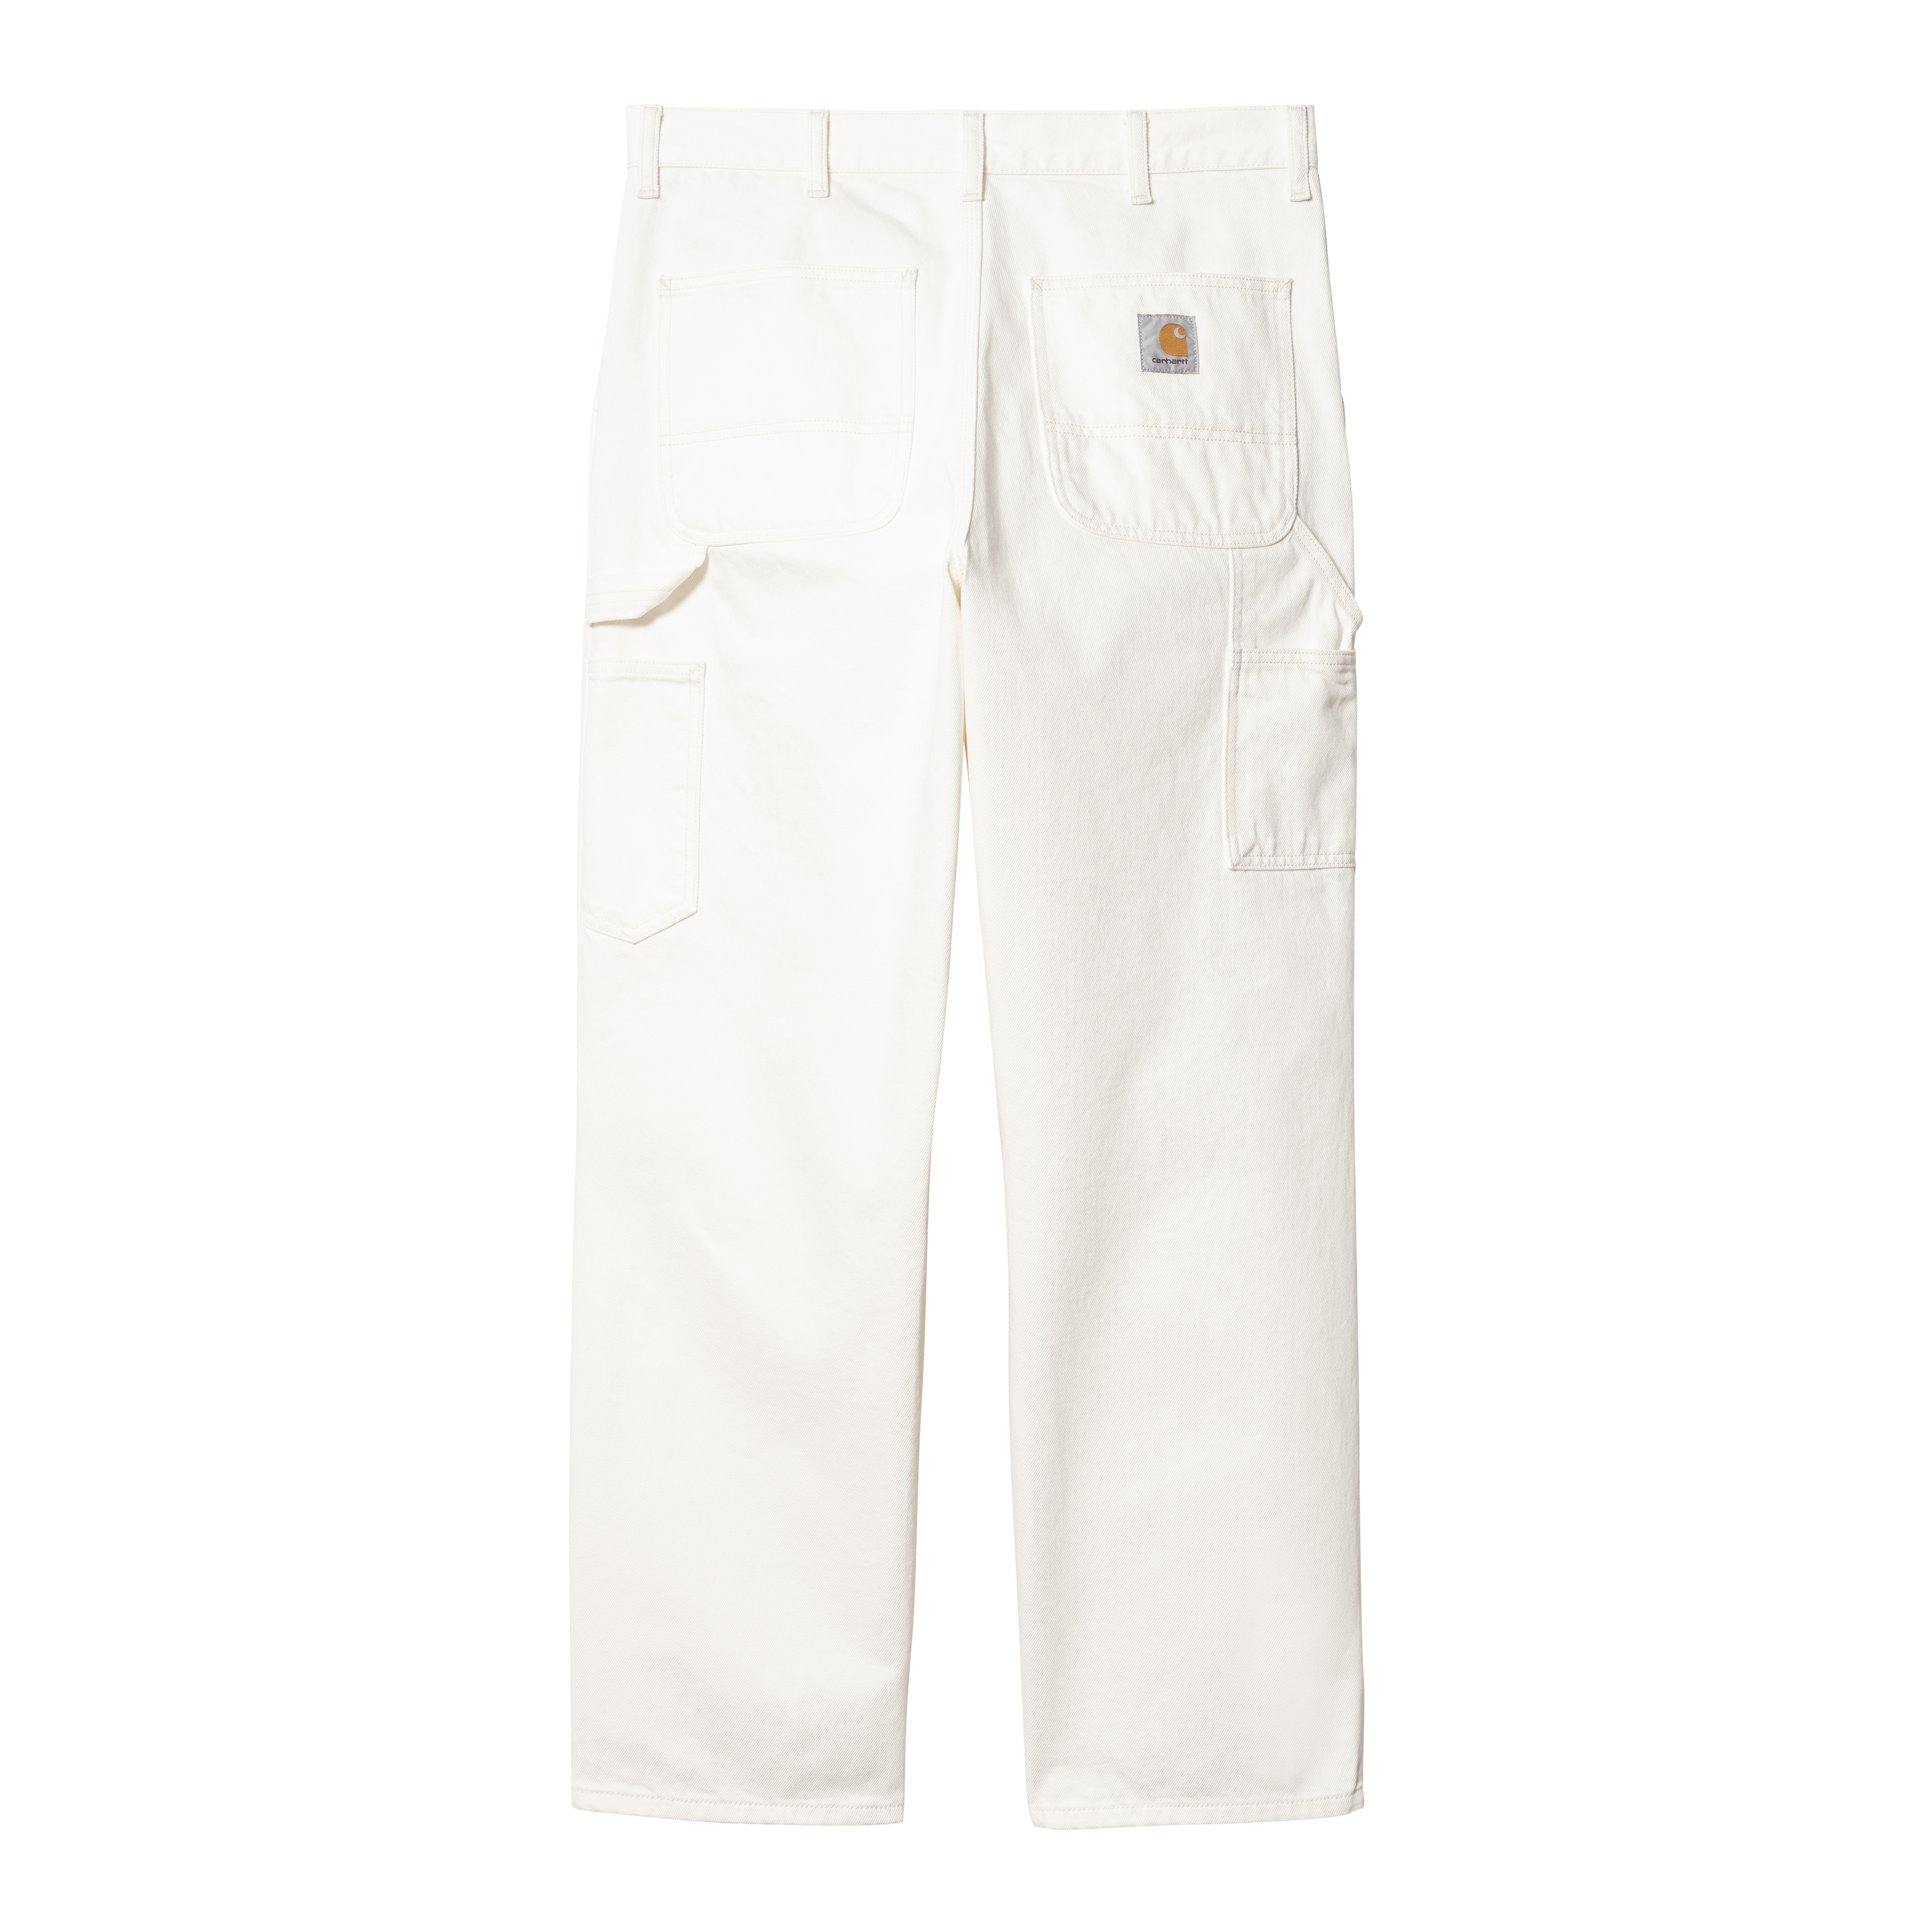 Carhartt WIP Single Knee Pant in White